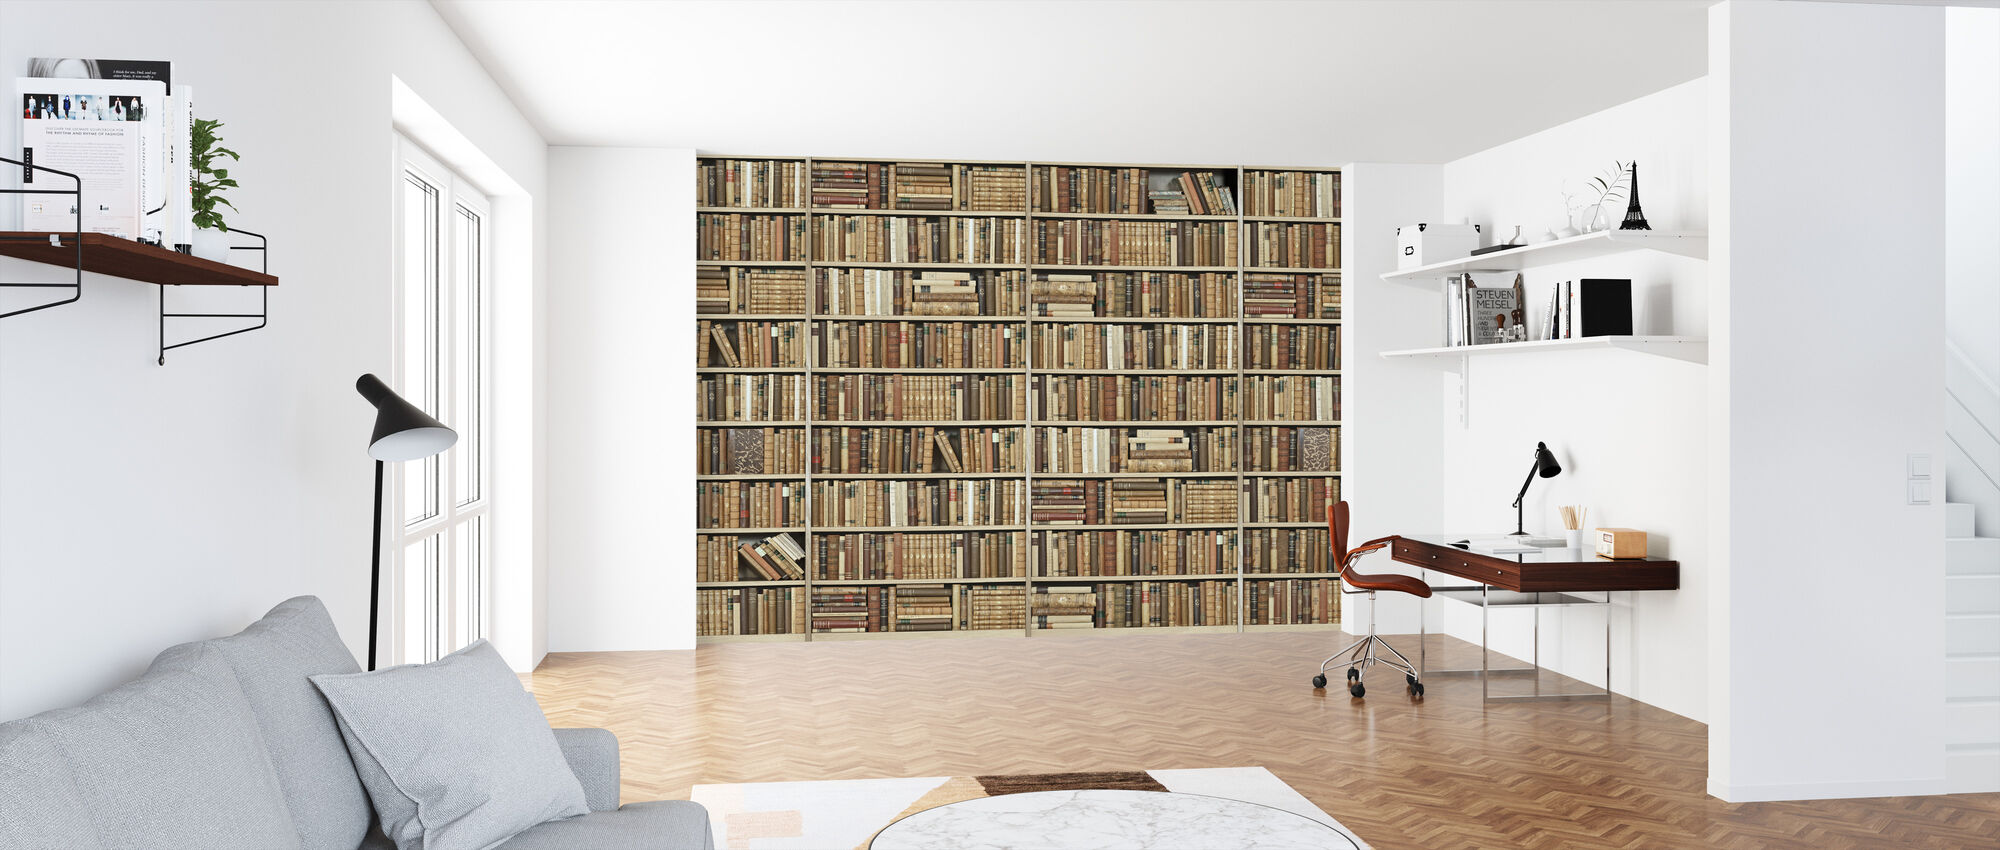 Bookshelf Wooden Long Beige Affordable Wall Mural Photowall